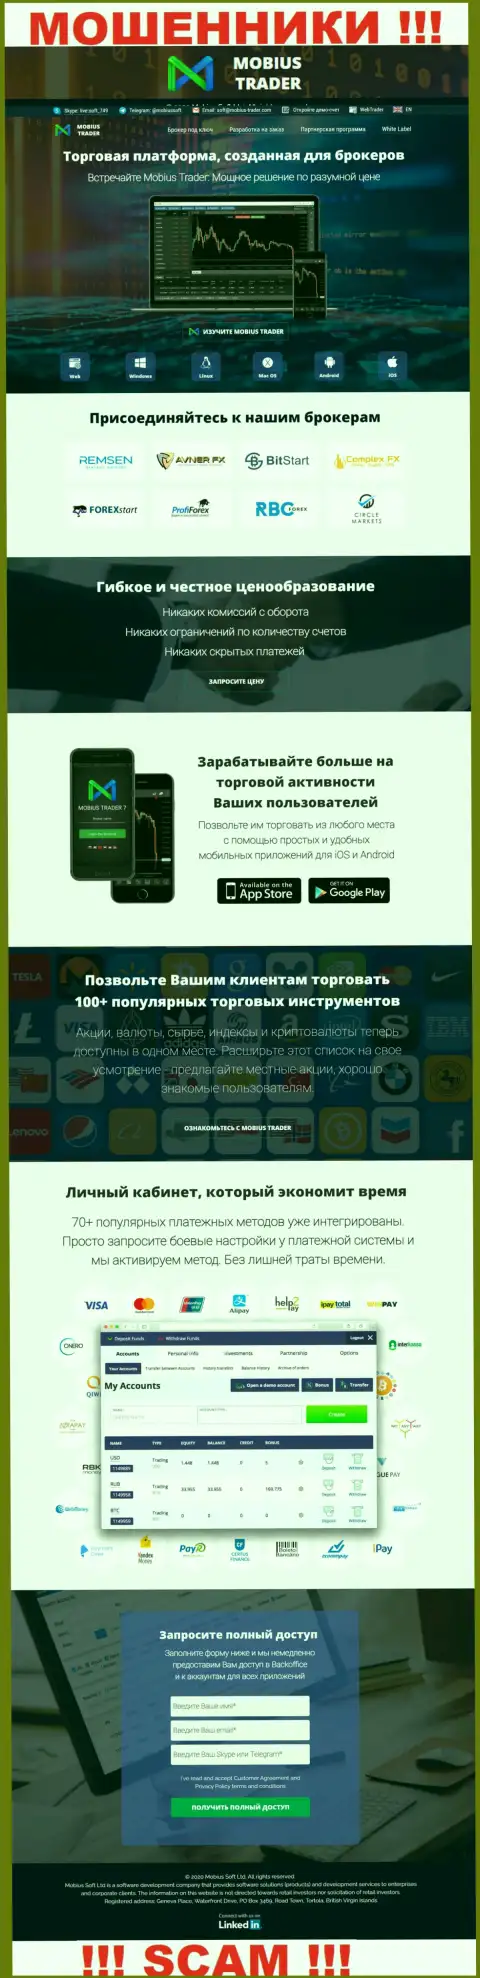 Web-сервис мошеннической конторы Мобиус-Трейдер - Мобиус-Трейдер Ком